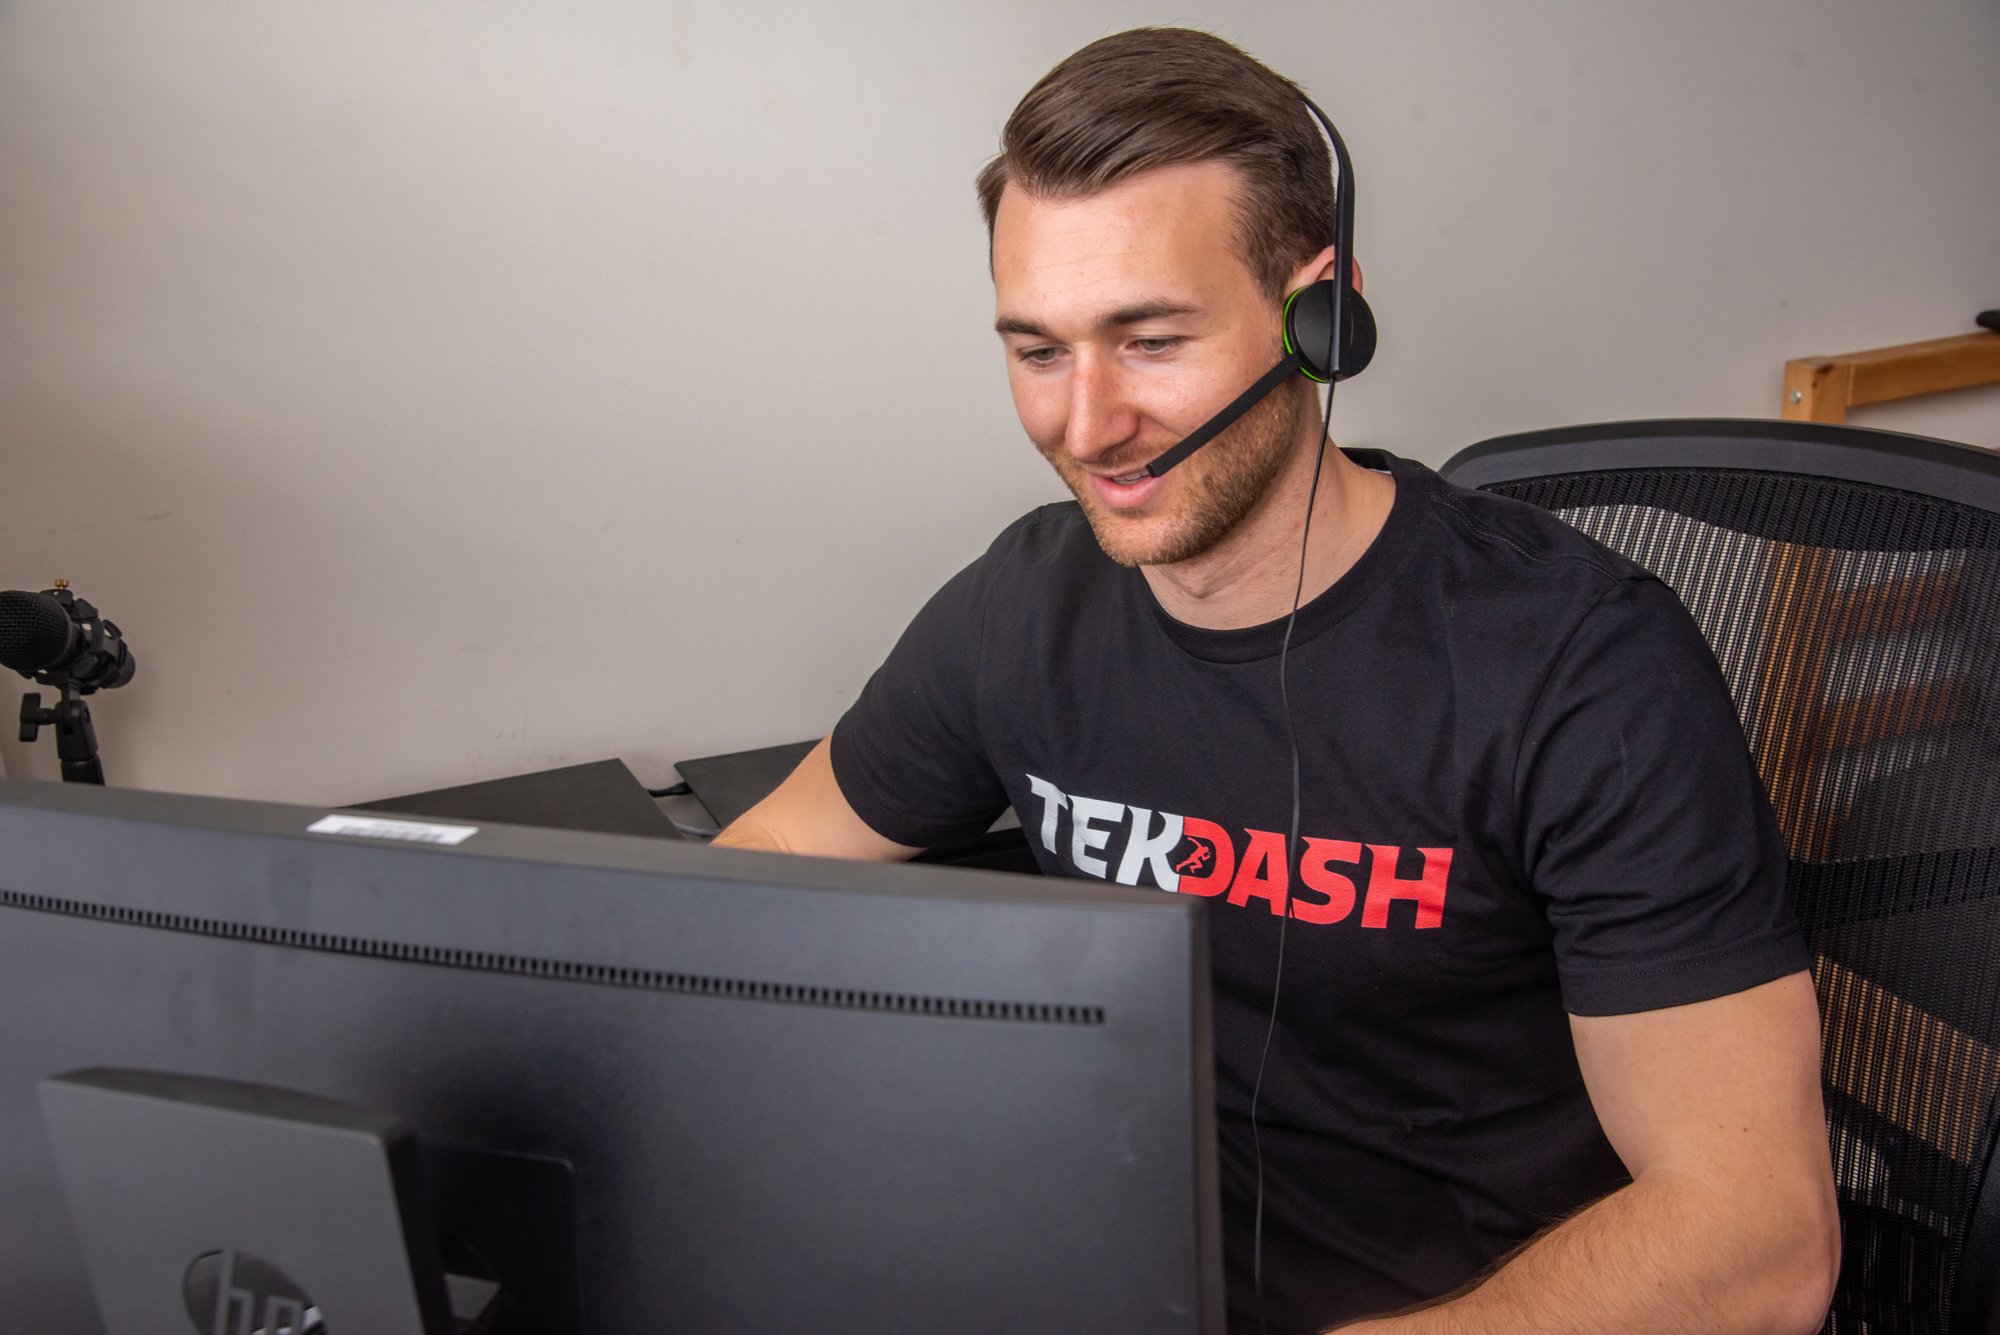 Tech Support TekDash Technician